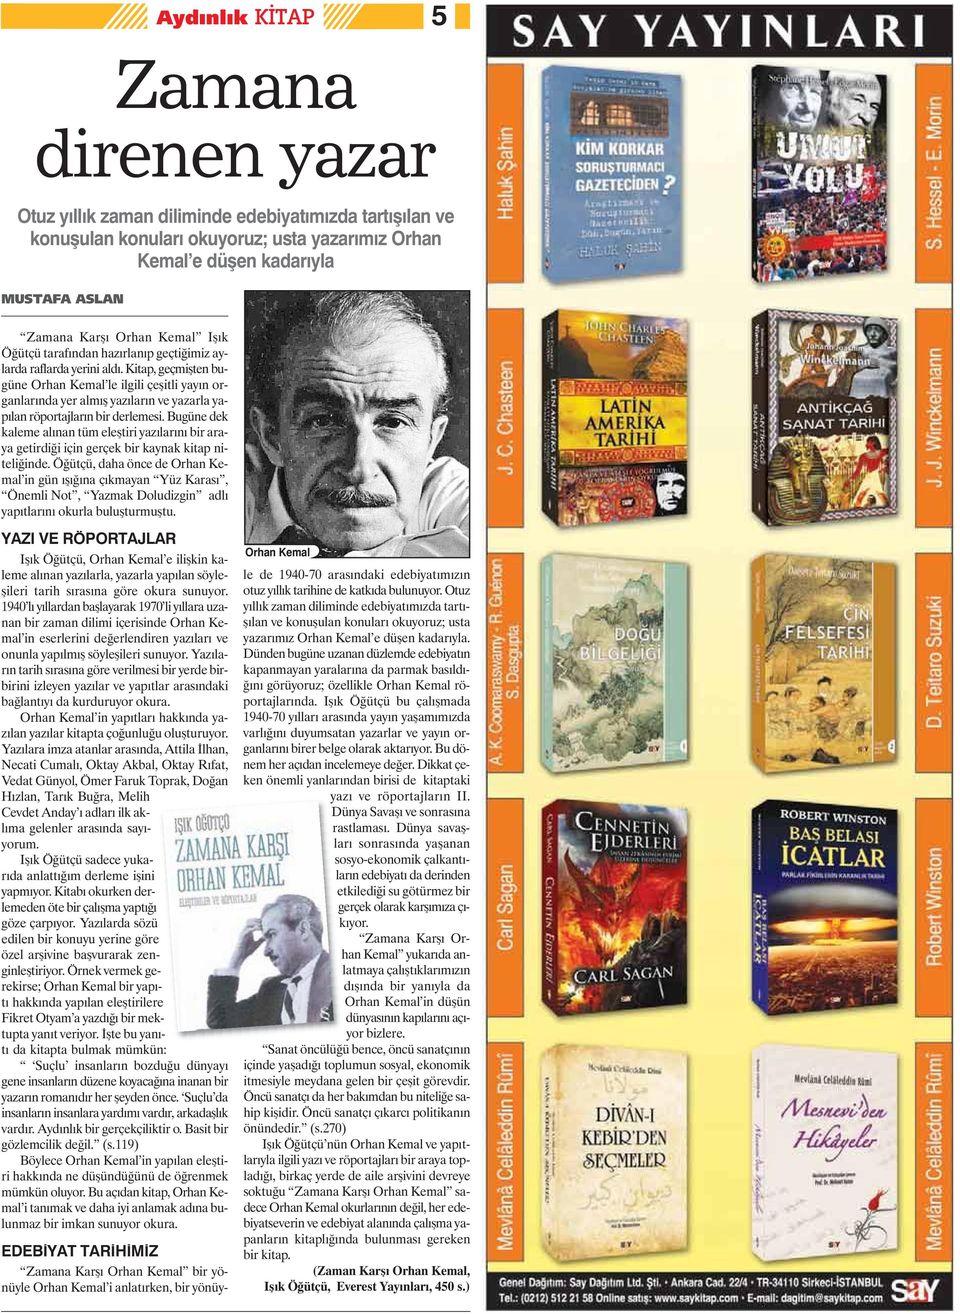 Kitap, geçmişten bugüne Orhan Kemal le ilgili çeşitli yayın organlarında yer almış yazıların ve yazarla yapılan röportajların bir derlemesi.